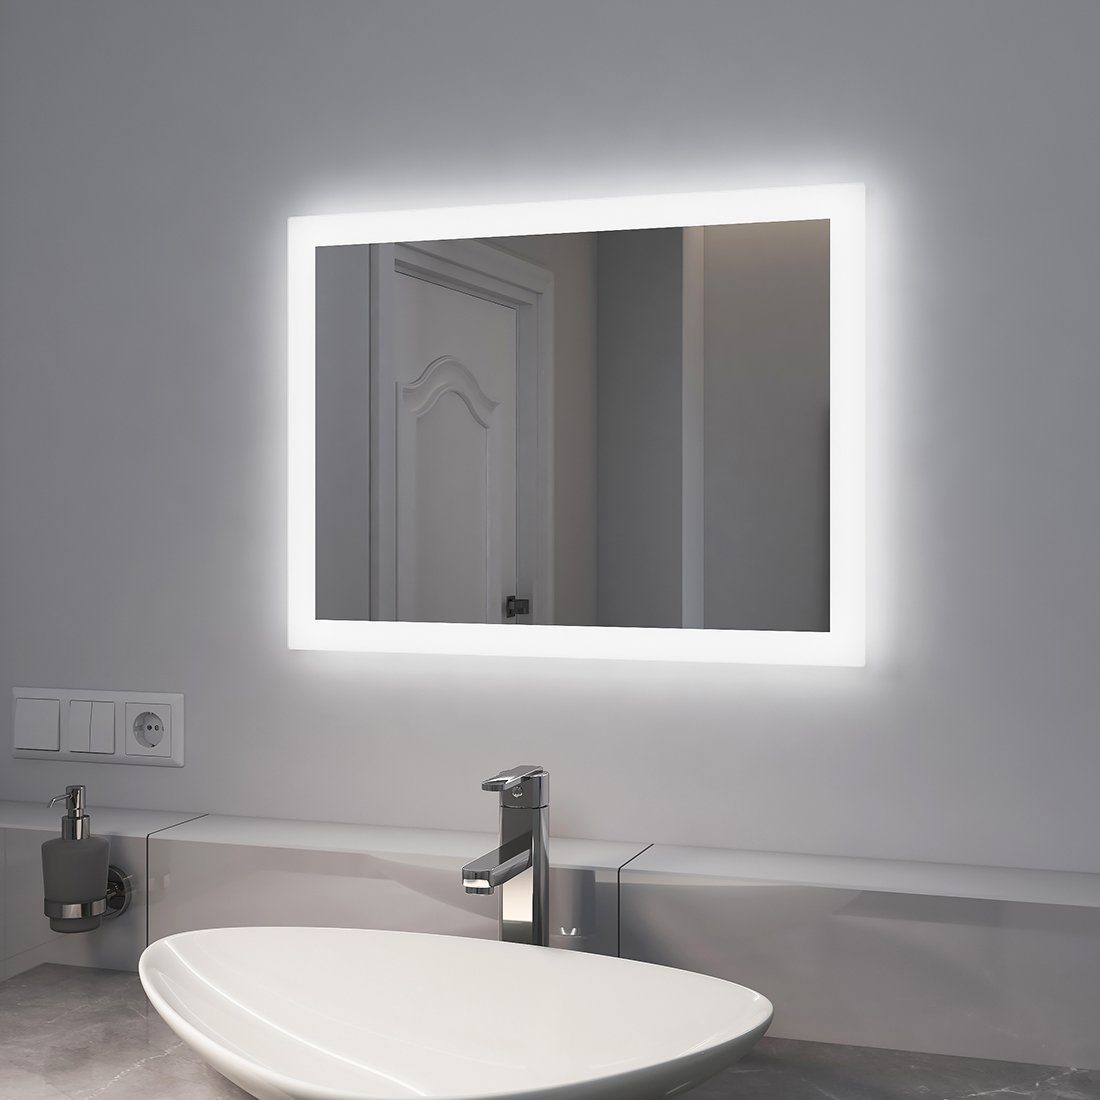 EMKE Badspiegel LED Badspiegel mit Beleuchtung Badezimmerspiegel  Wandspiegel, mit Beschlagfrei, 2 Lichtfarbe Warmweiß/Kaltweiß